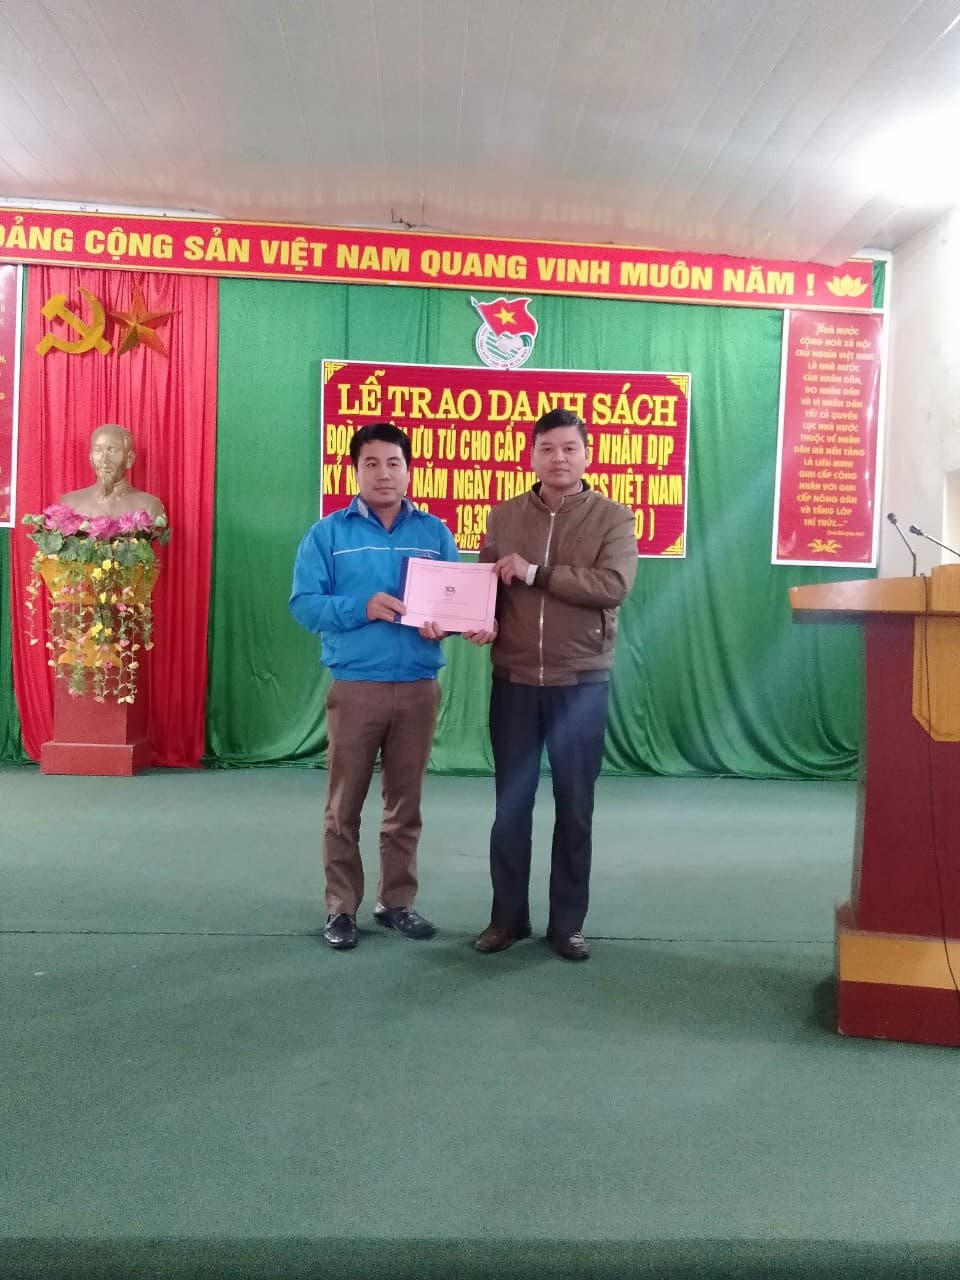 Đoàn xã Vĩnh Phúc tổ chức lễ trao danh sách đoàn viên ưu tú cho cấp ủy Đảng nhân dịp kỷ niệm 90 năm ngày thành lập Đảng Cộng sản Việt Nam (03/02/1930 - 03/02/2020)